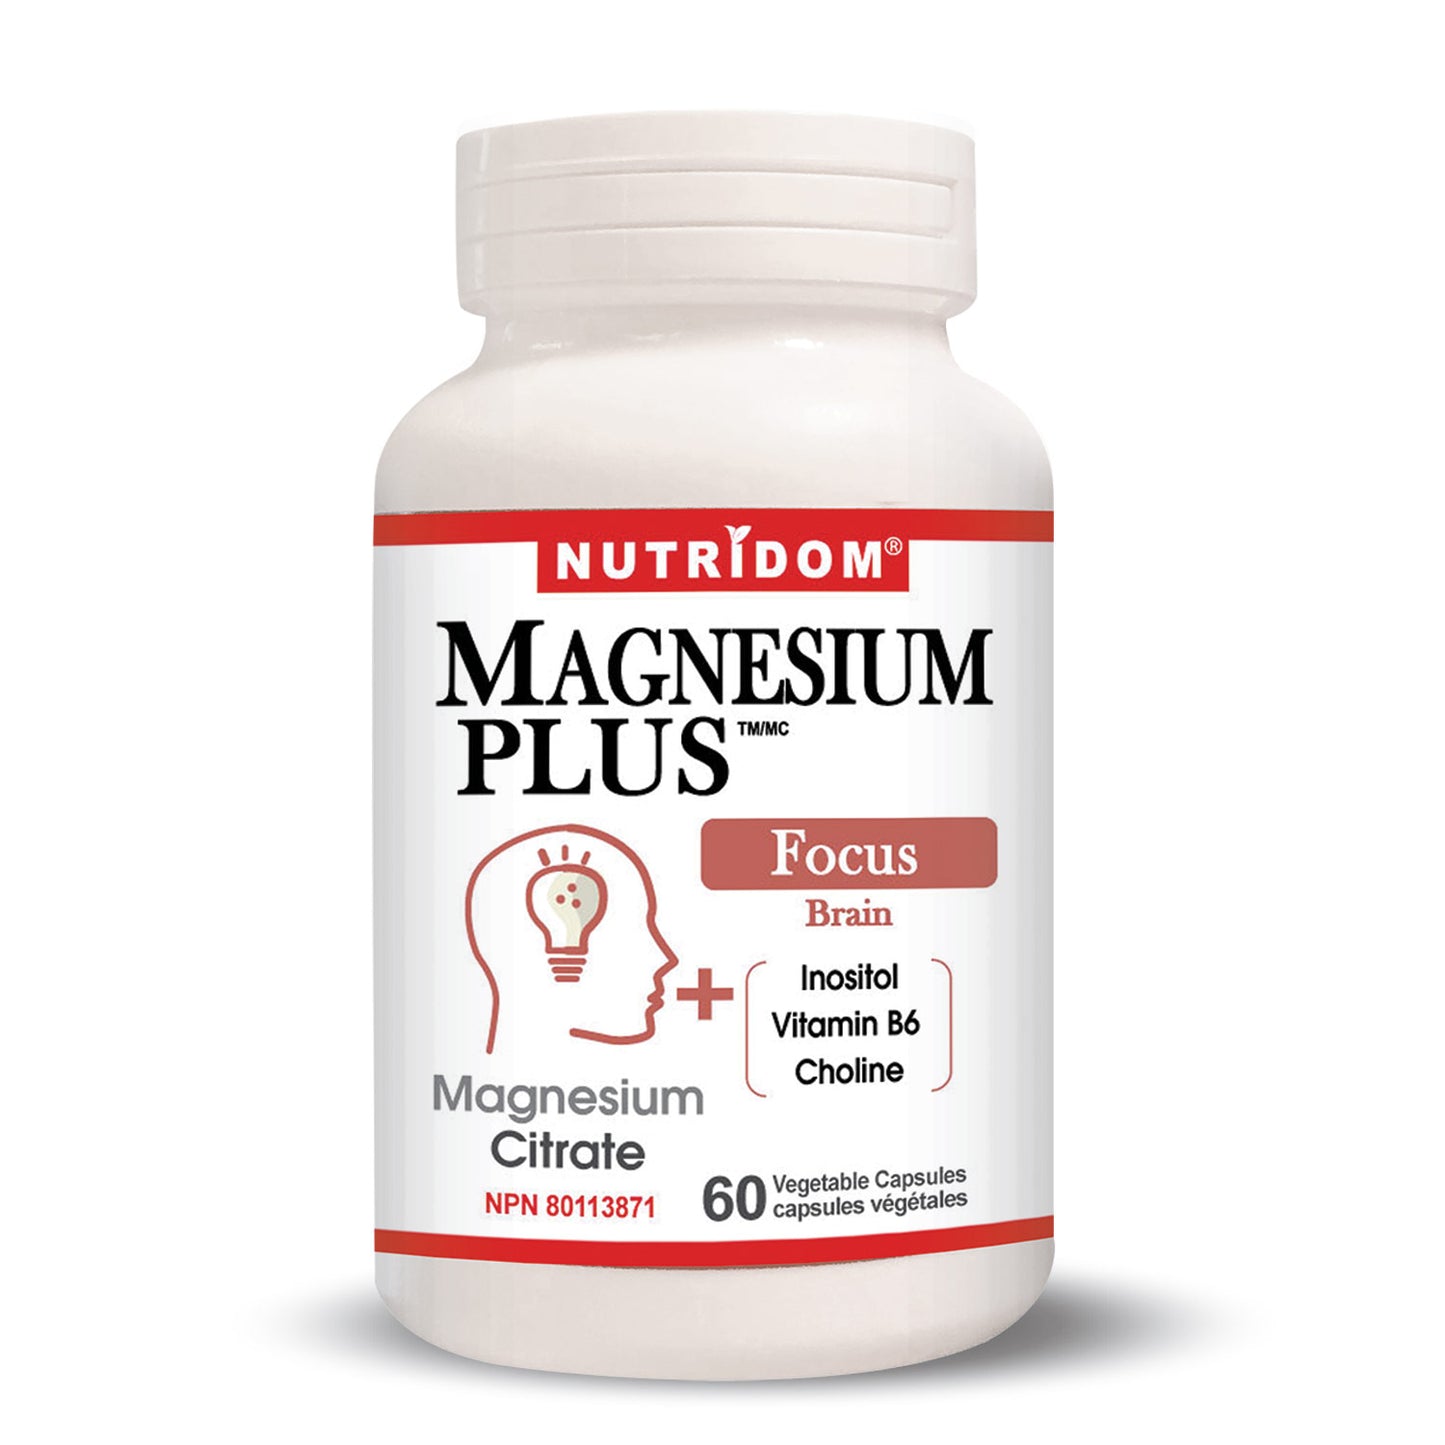 Magnesium Plus Focus (60 Veggie Capsules)